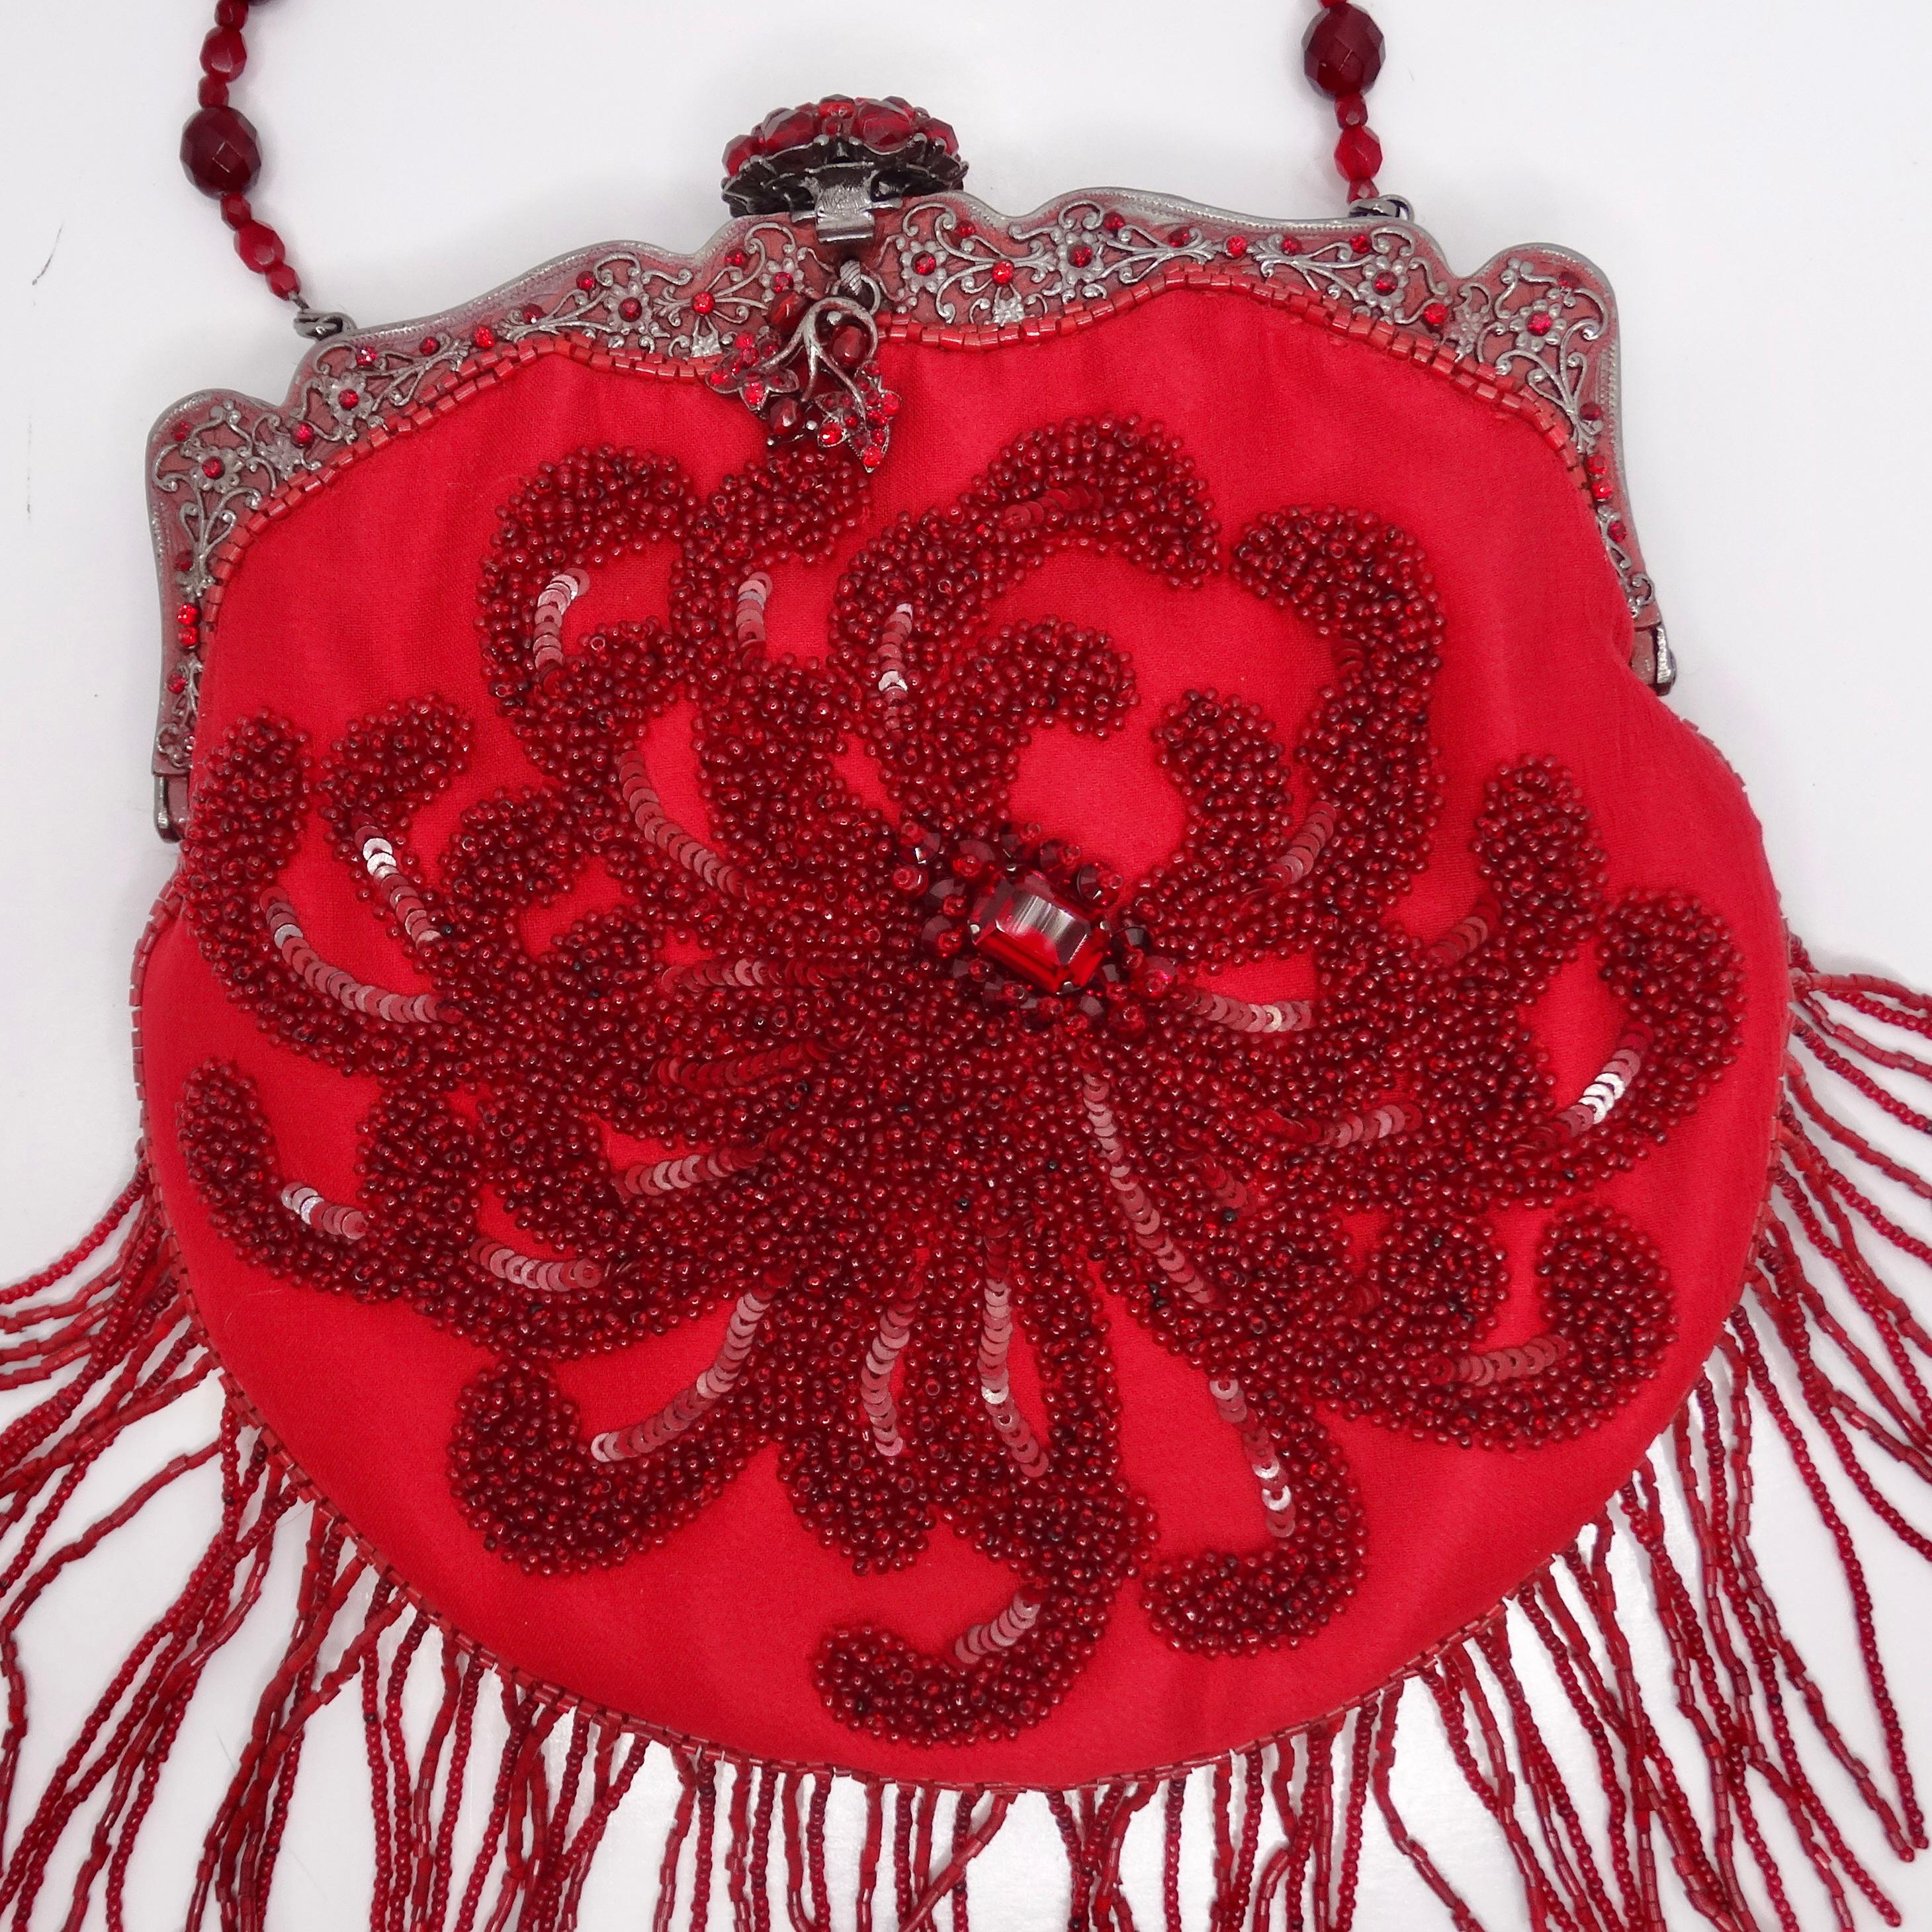 Wir präsentieren die Larissa Barrera Red Embellished Evening Bag, ein umwerfendes und einzigartiges Accessoire, das Eleganz und Charme ausstrahlt. Diese auffällige Abendtasche zeichnet sich durch exquisite Details aus, die ihre Schönheit auf ein